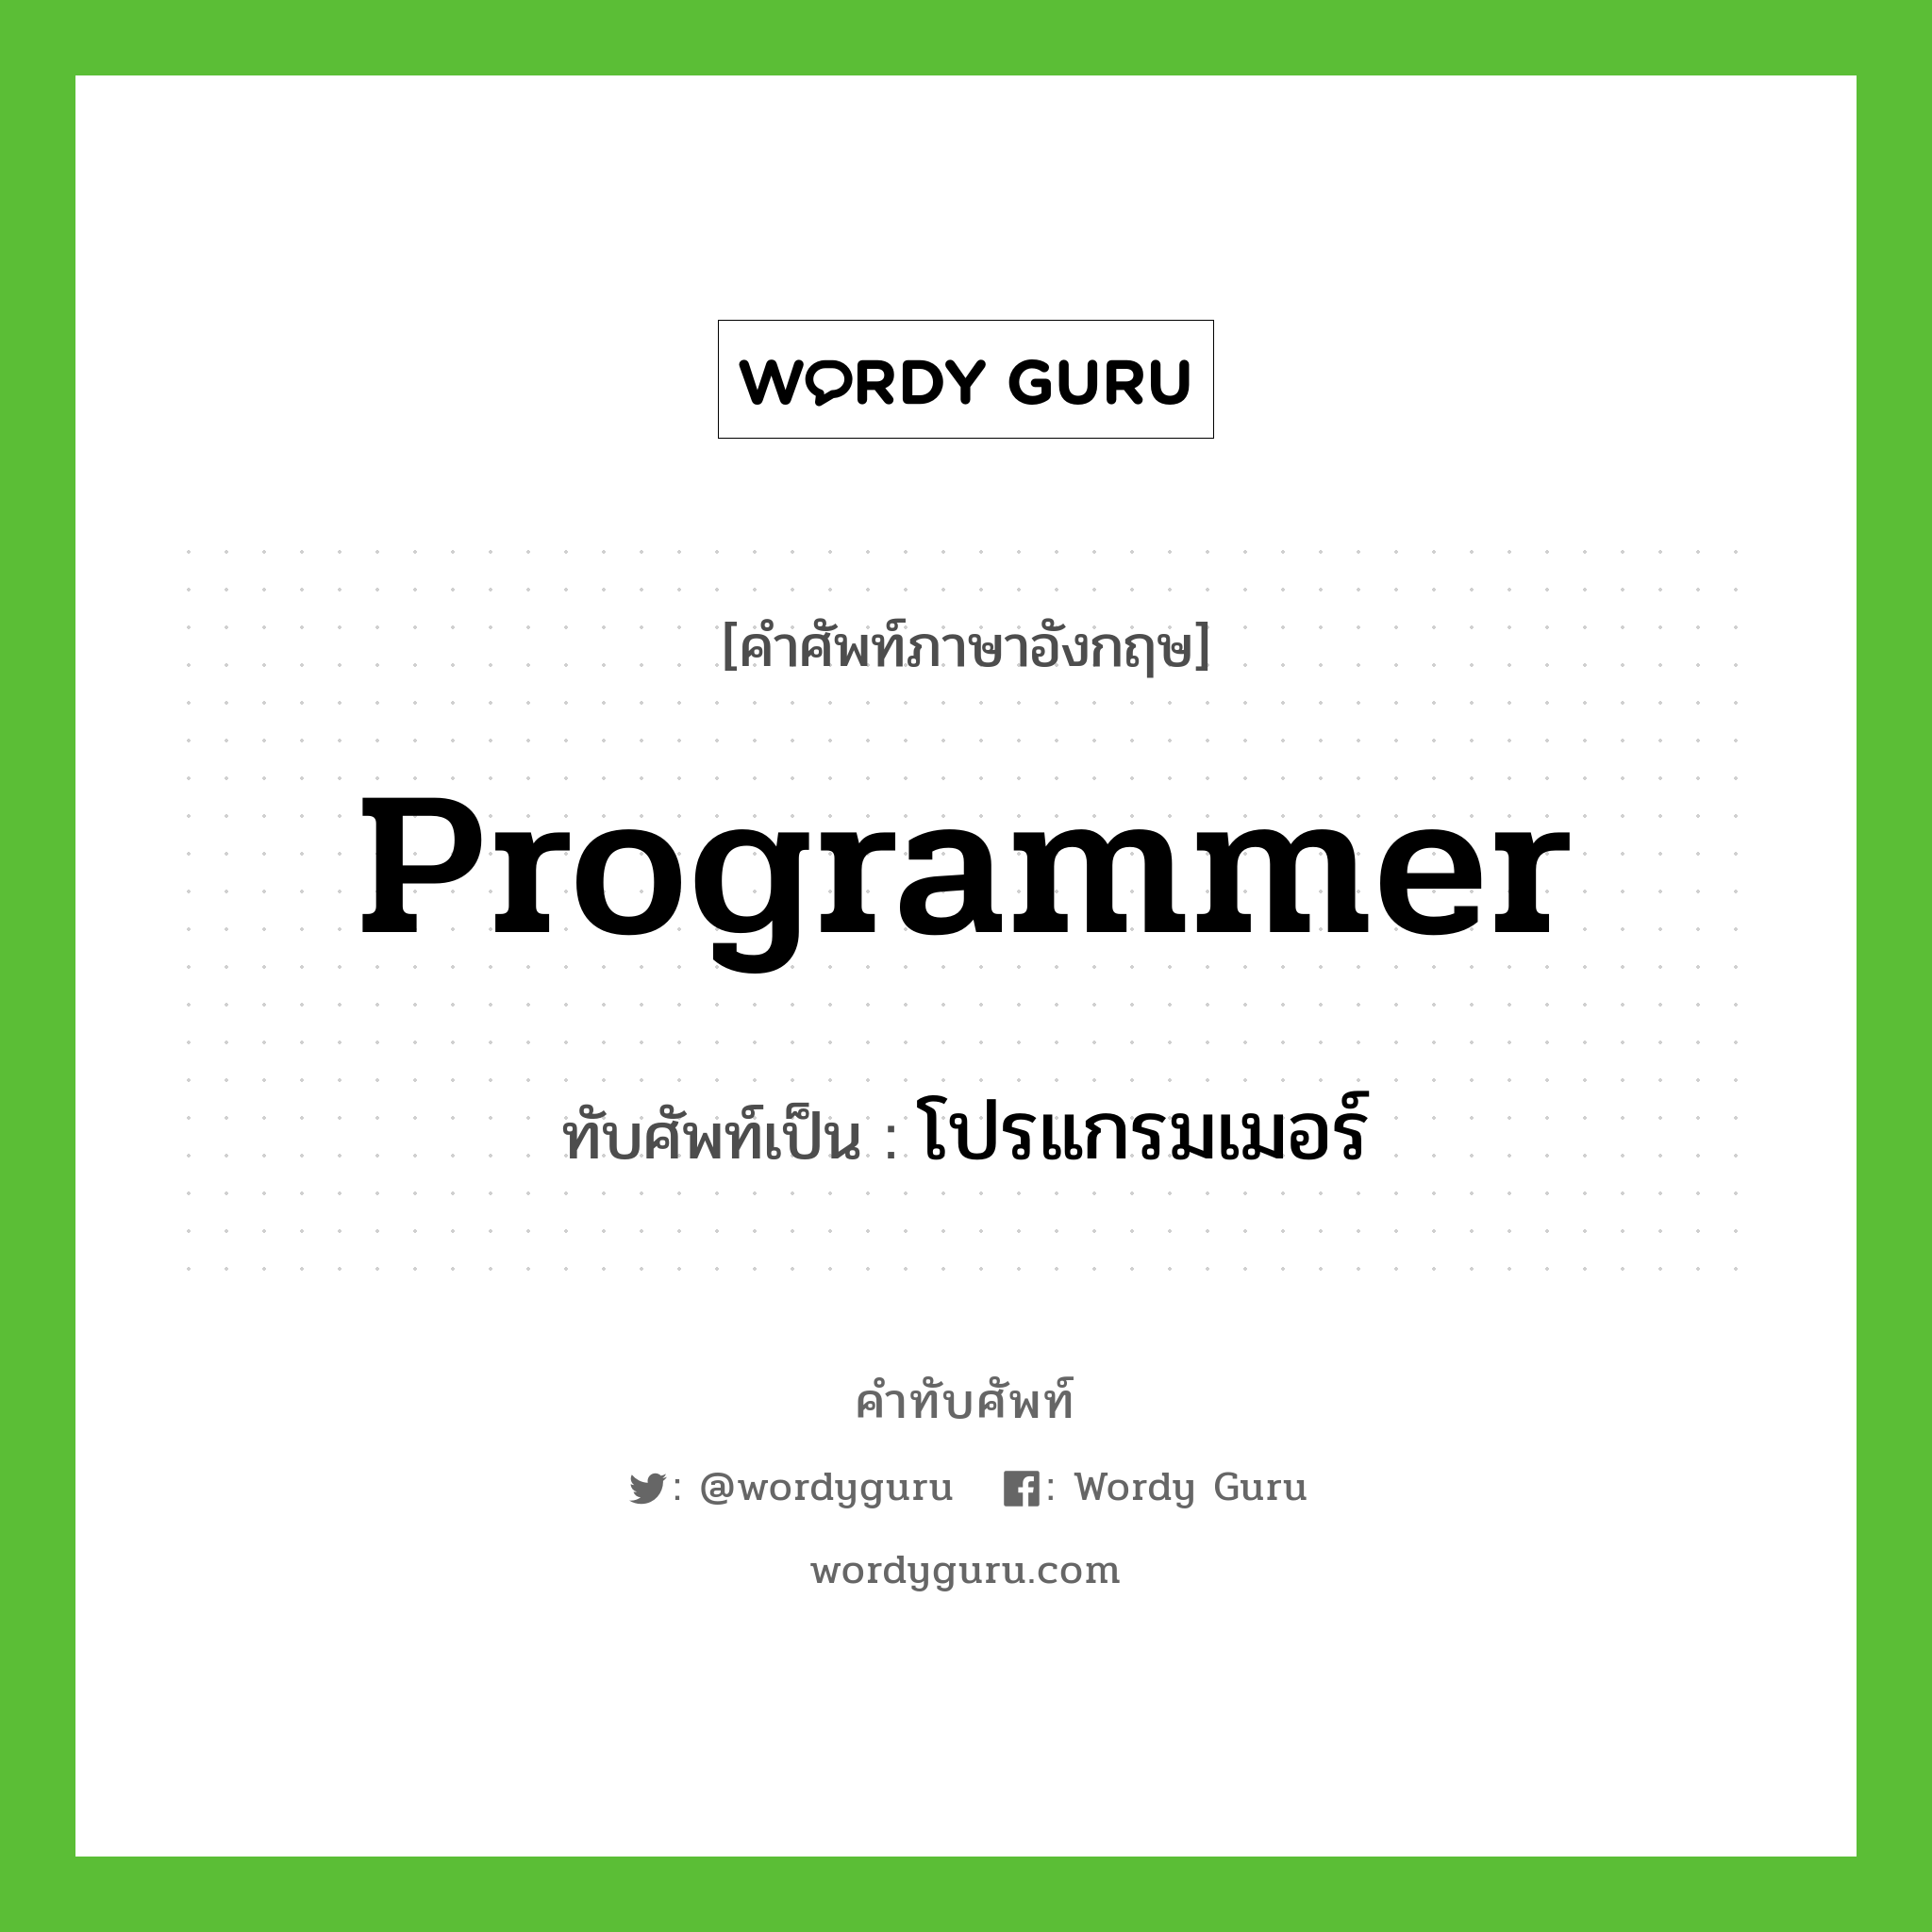 programmer เขียนเป็นคำไทยว่าอะไร?, คำศัพท์ภาษาอังกฤษ programmer ทับศัพท์เป็น โปรแกรมเมอร์